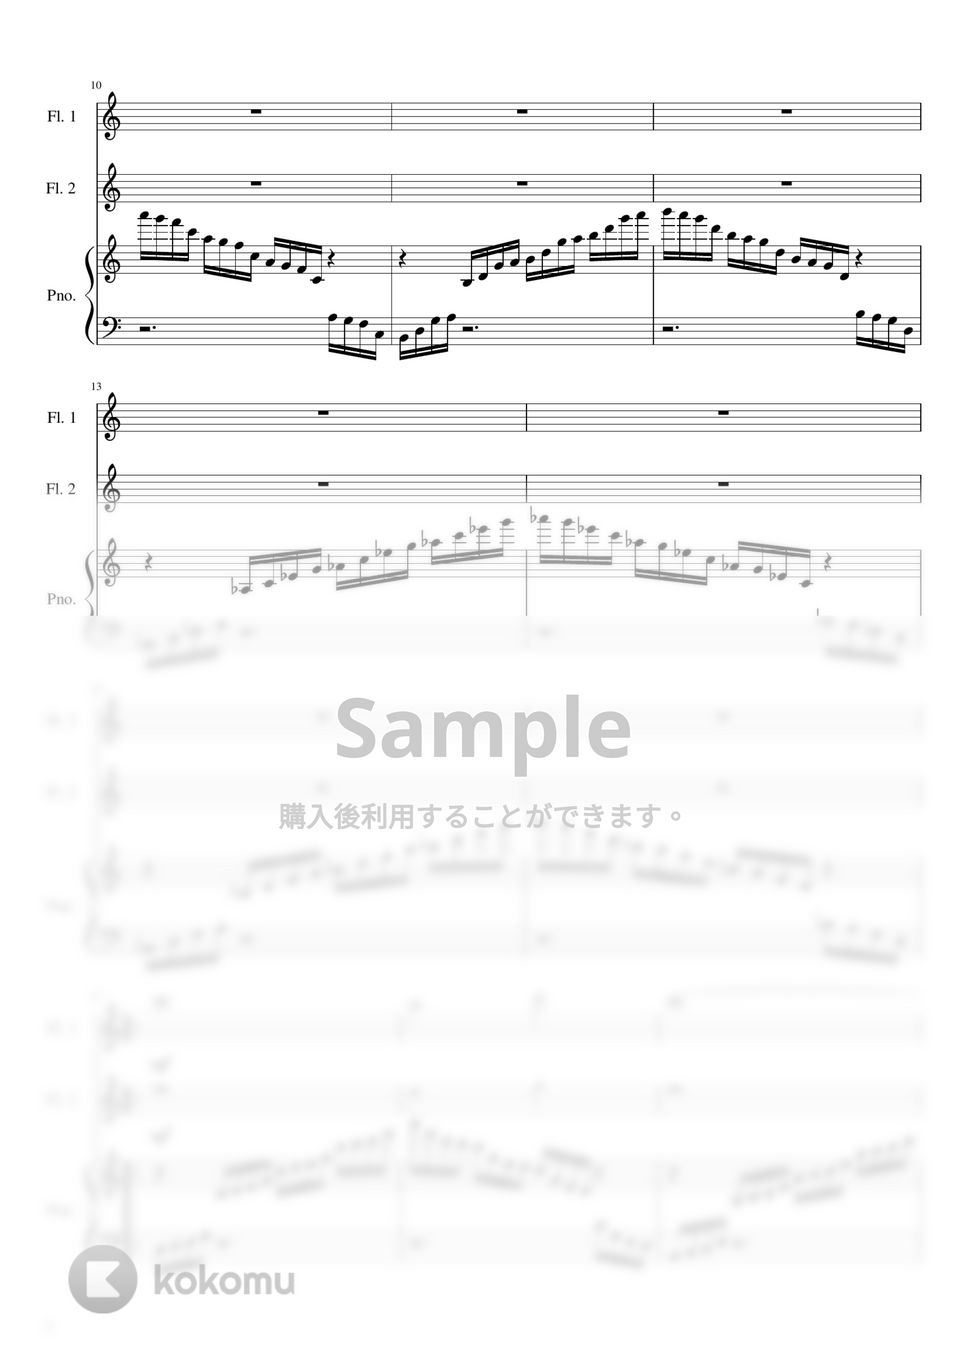 FINAL FANTASY - プレリュード (フルート2重奏&ピアノ) by Piaflu